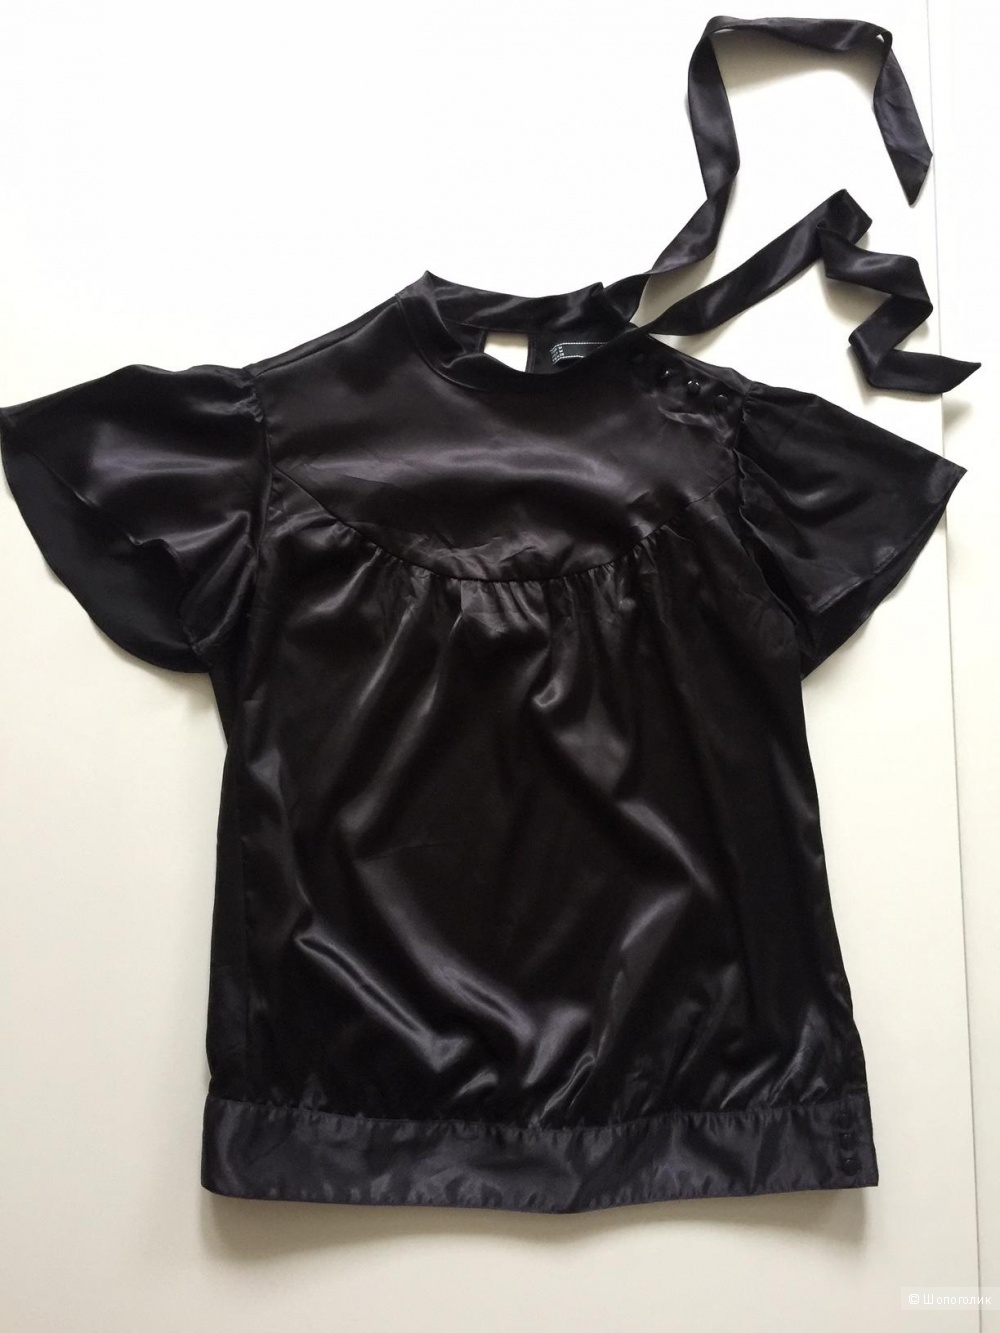 Черная атласная блузка с коротким рукавом и бантом марки TRF размер 40-42